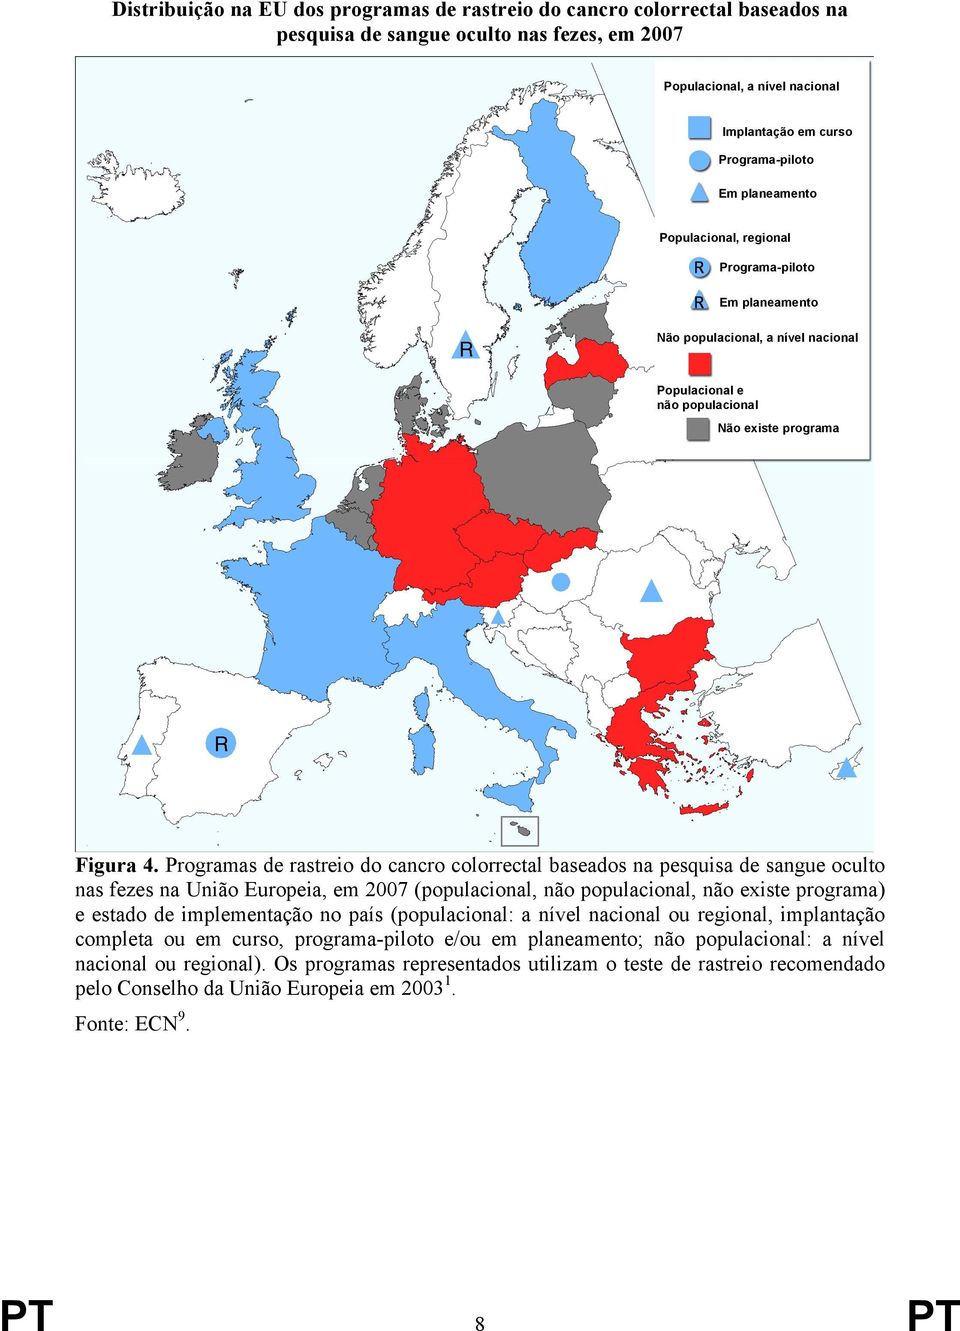 Programas de rastreio do cancro colorrectal baseados na pesquisa de sangue oculto nas fezes na União Europeia, em 2007 (populacional, não populacional, não existe programa) e estado de implementação